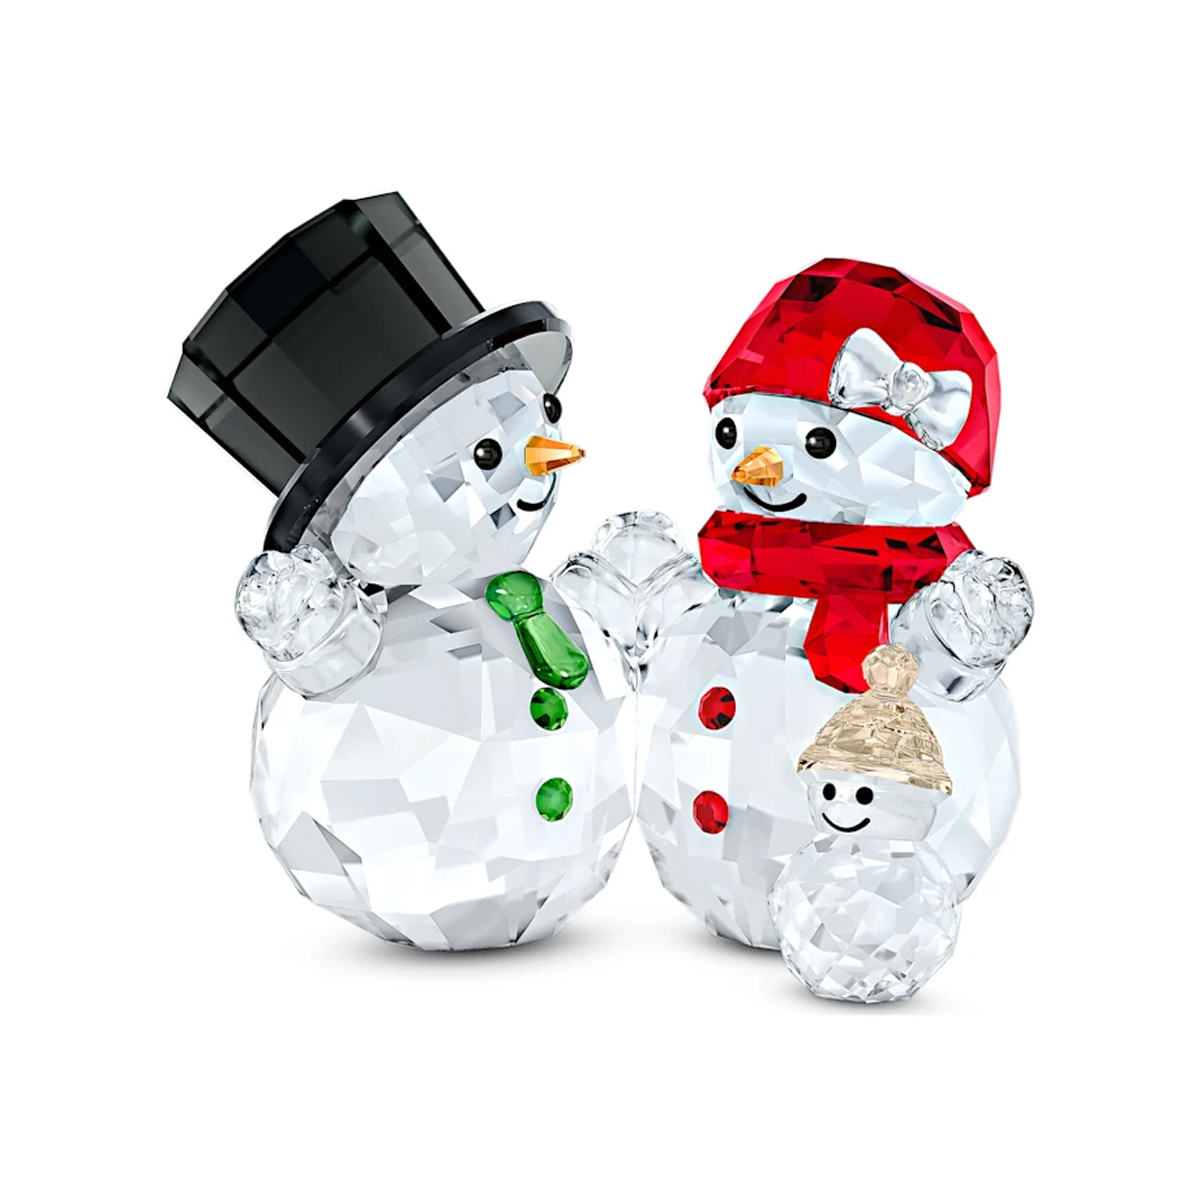 Swarovski - Joyful Snowman Family Figurine